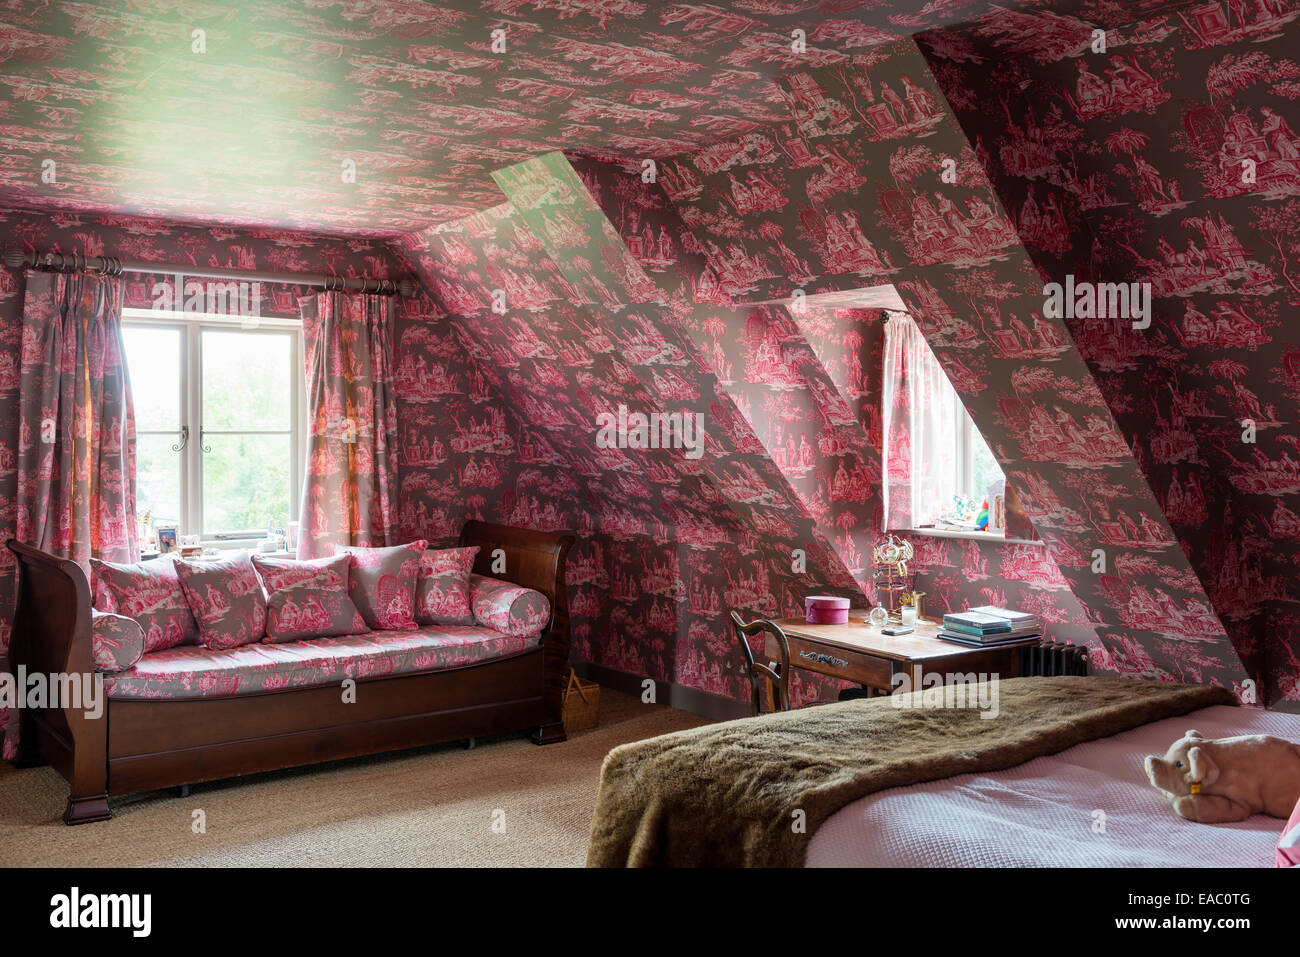 Attischen Stil Schlafzimmer mit Fett Toile De Jouy Tapeten und Stoffe Stockfoto